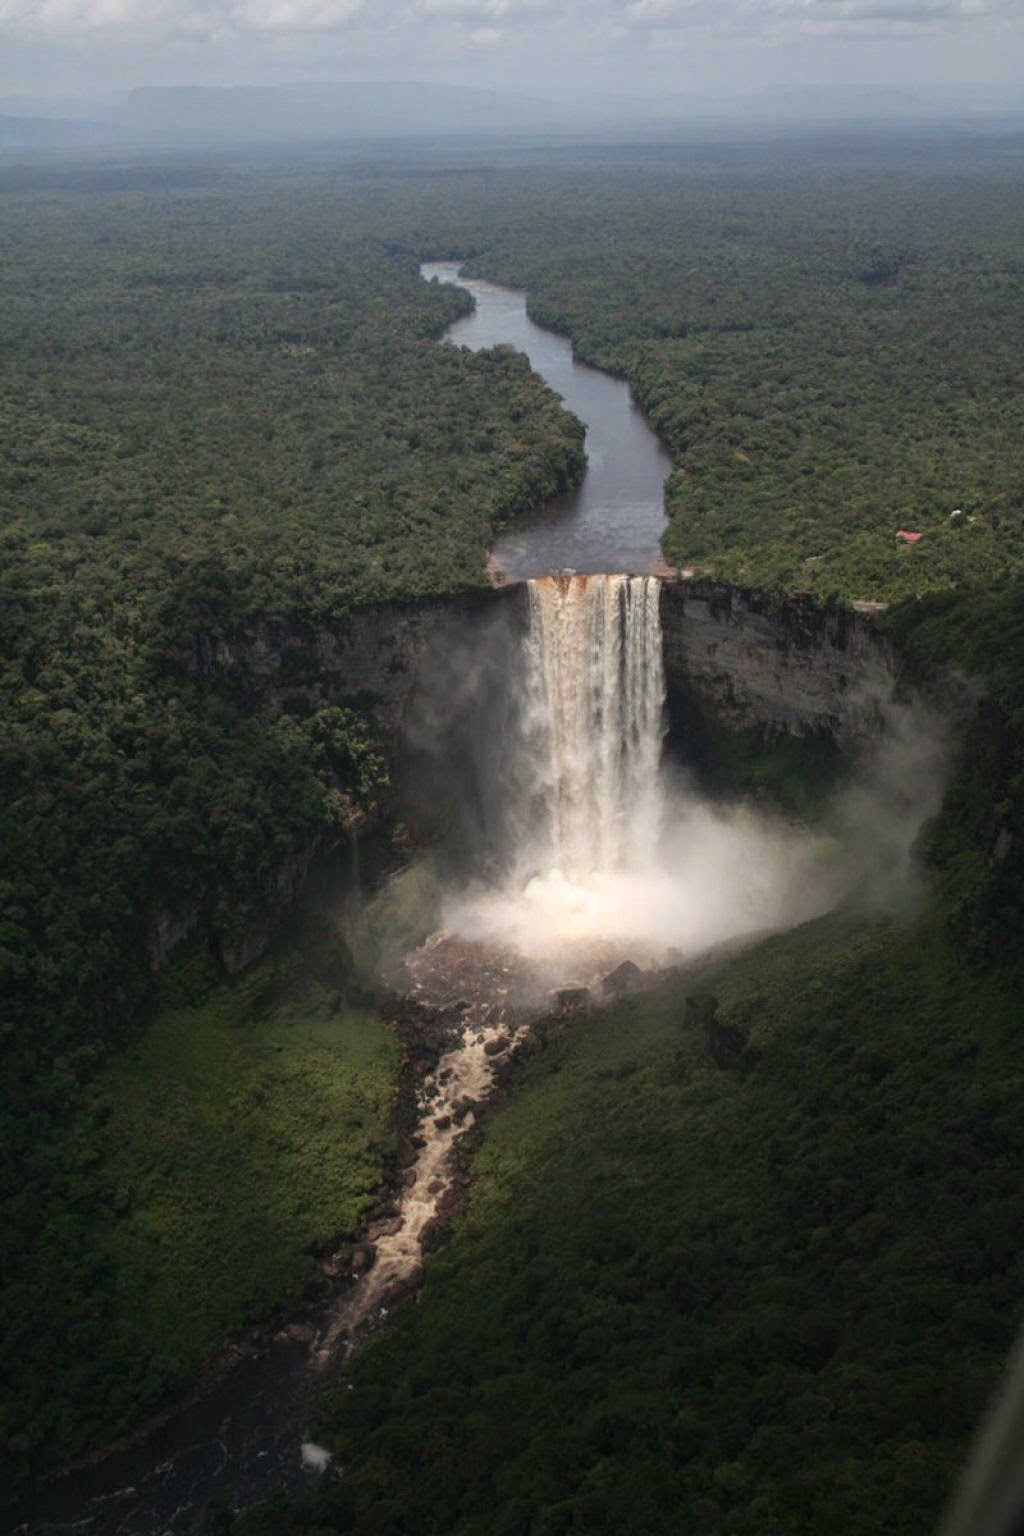 Широкий водопад в южной америке. Кайетур, Гайана. Национальный парк Кайетур Гайана. Водопад Кайетур. Водопад Анхель Венесуэла.